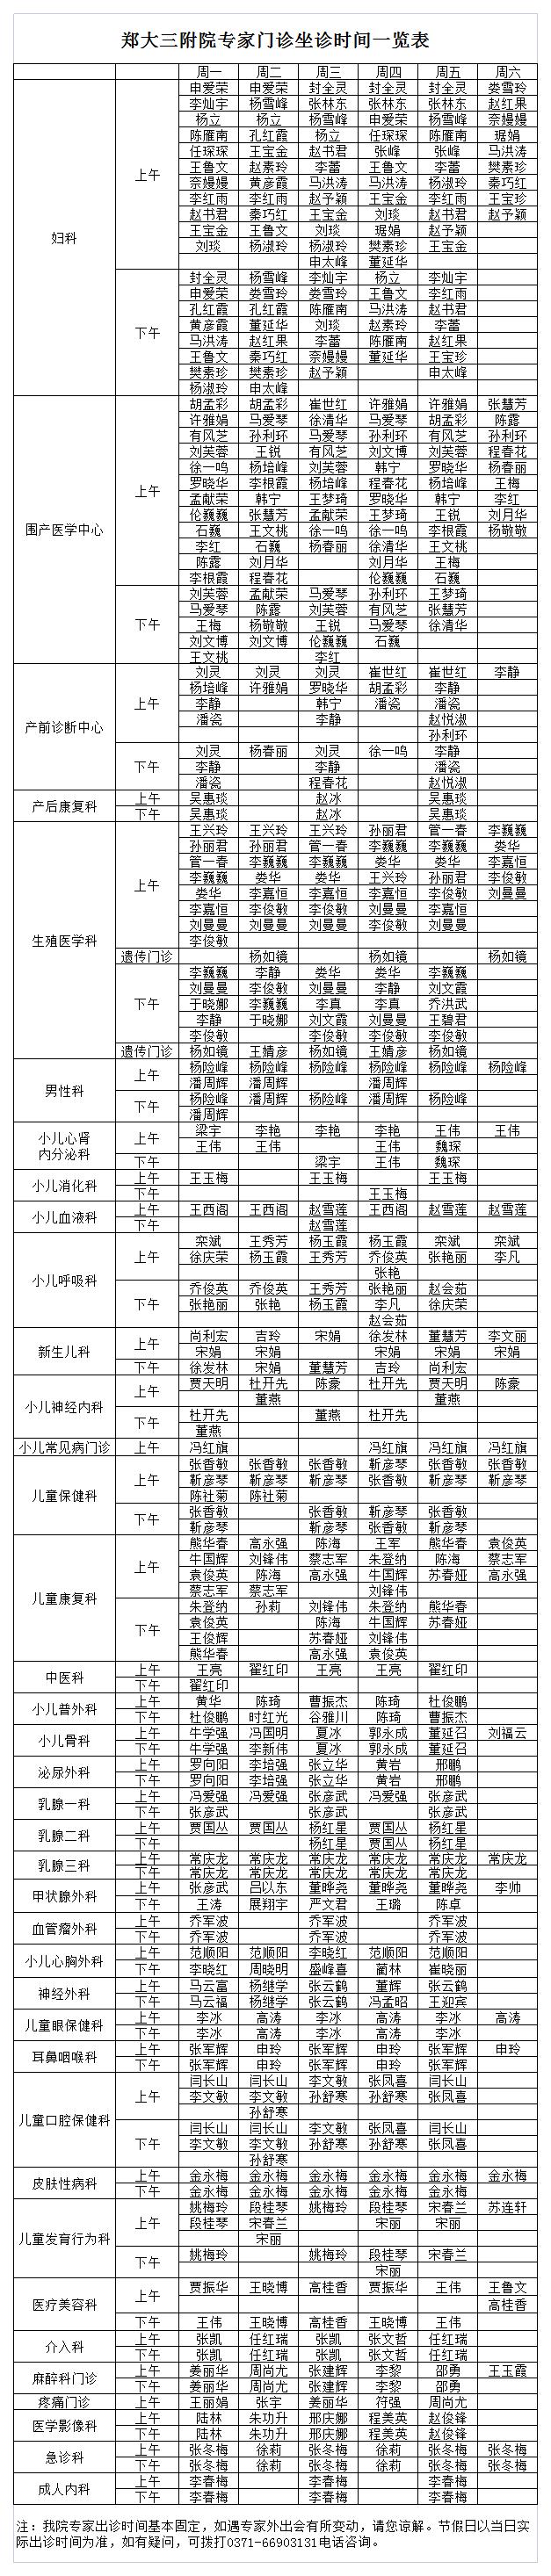 郑大三附院专家门诊表坐诊时间一览表(病历本)20211130.jpg